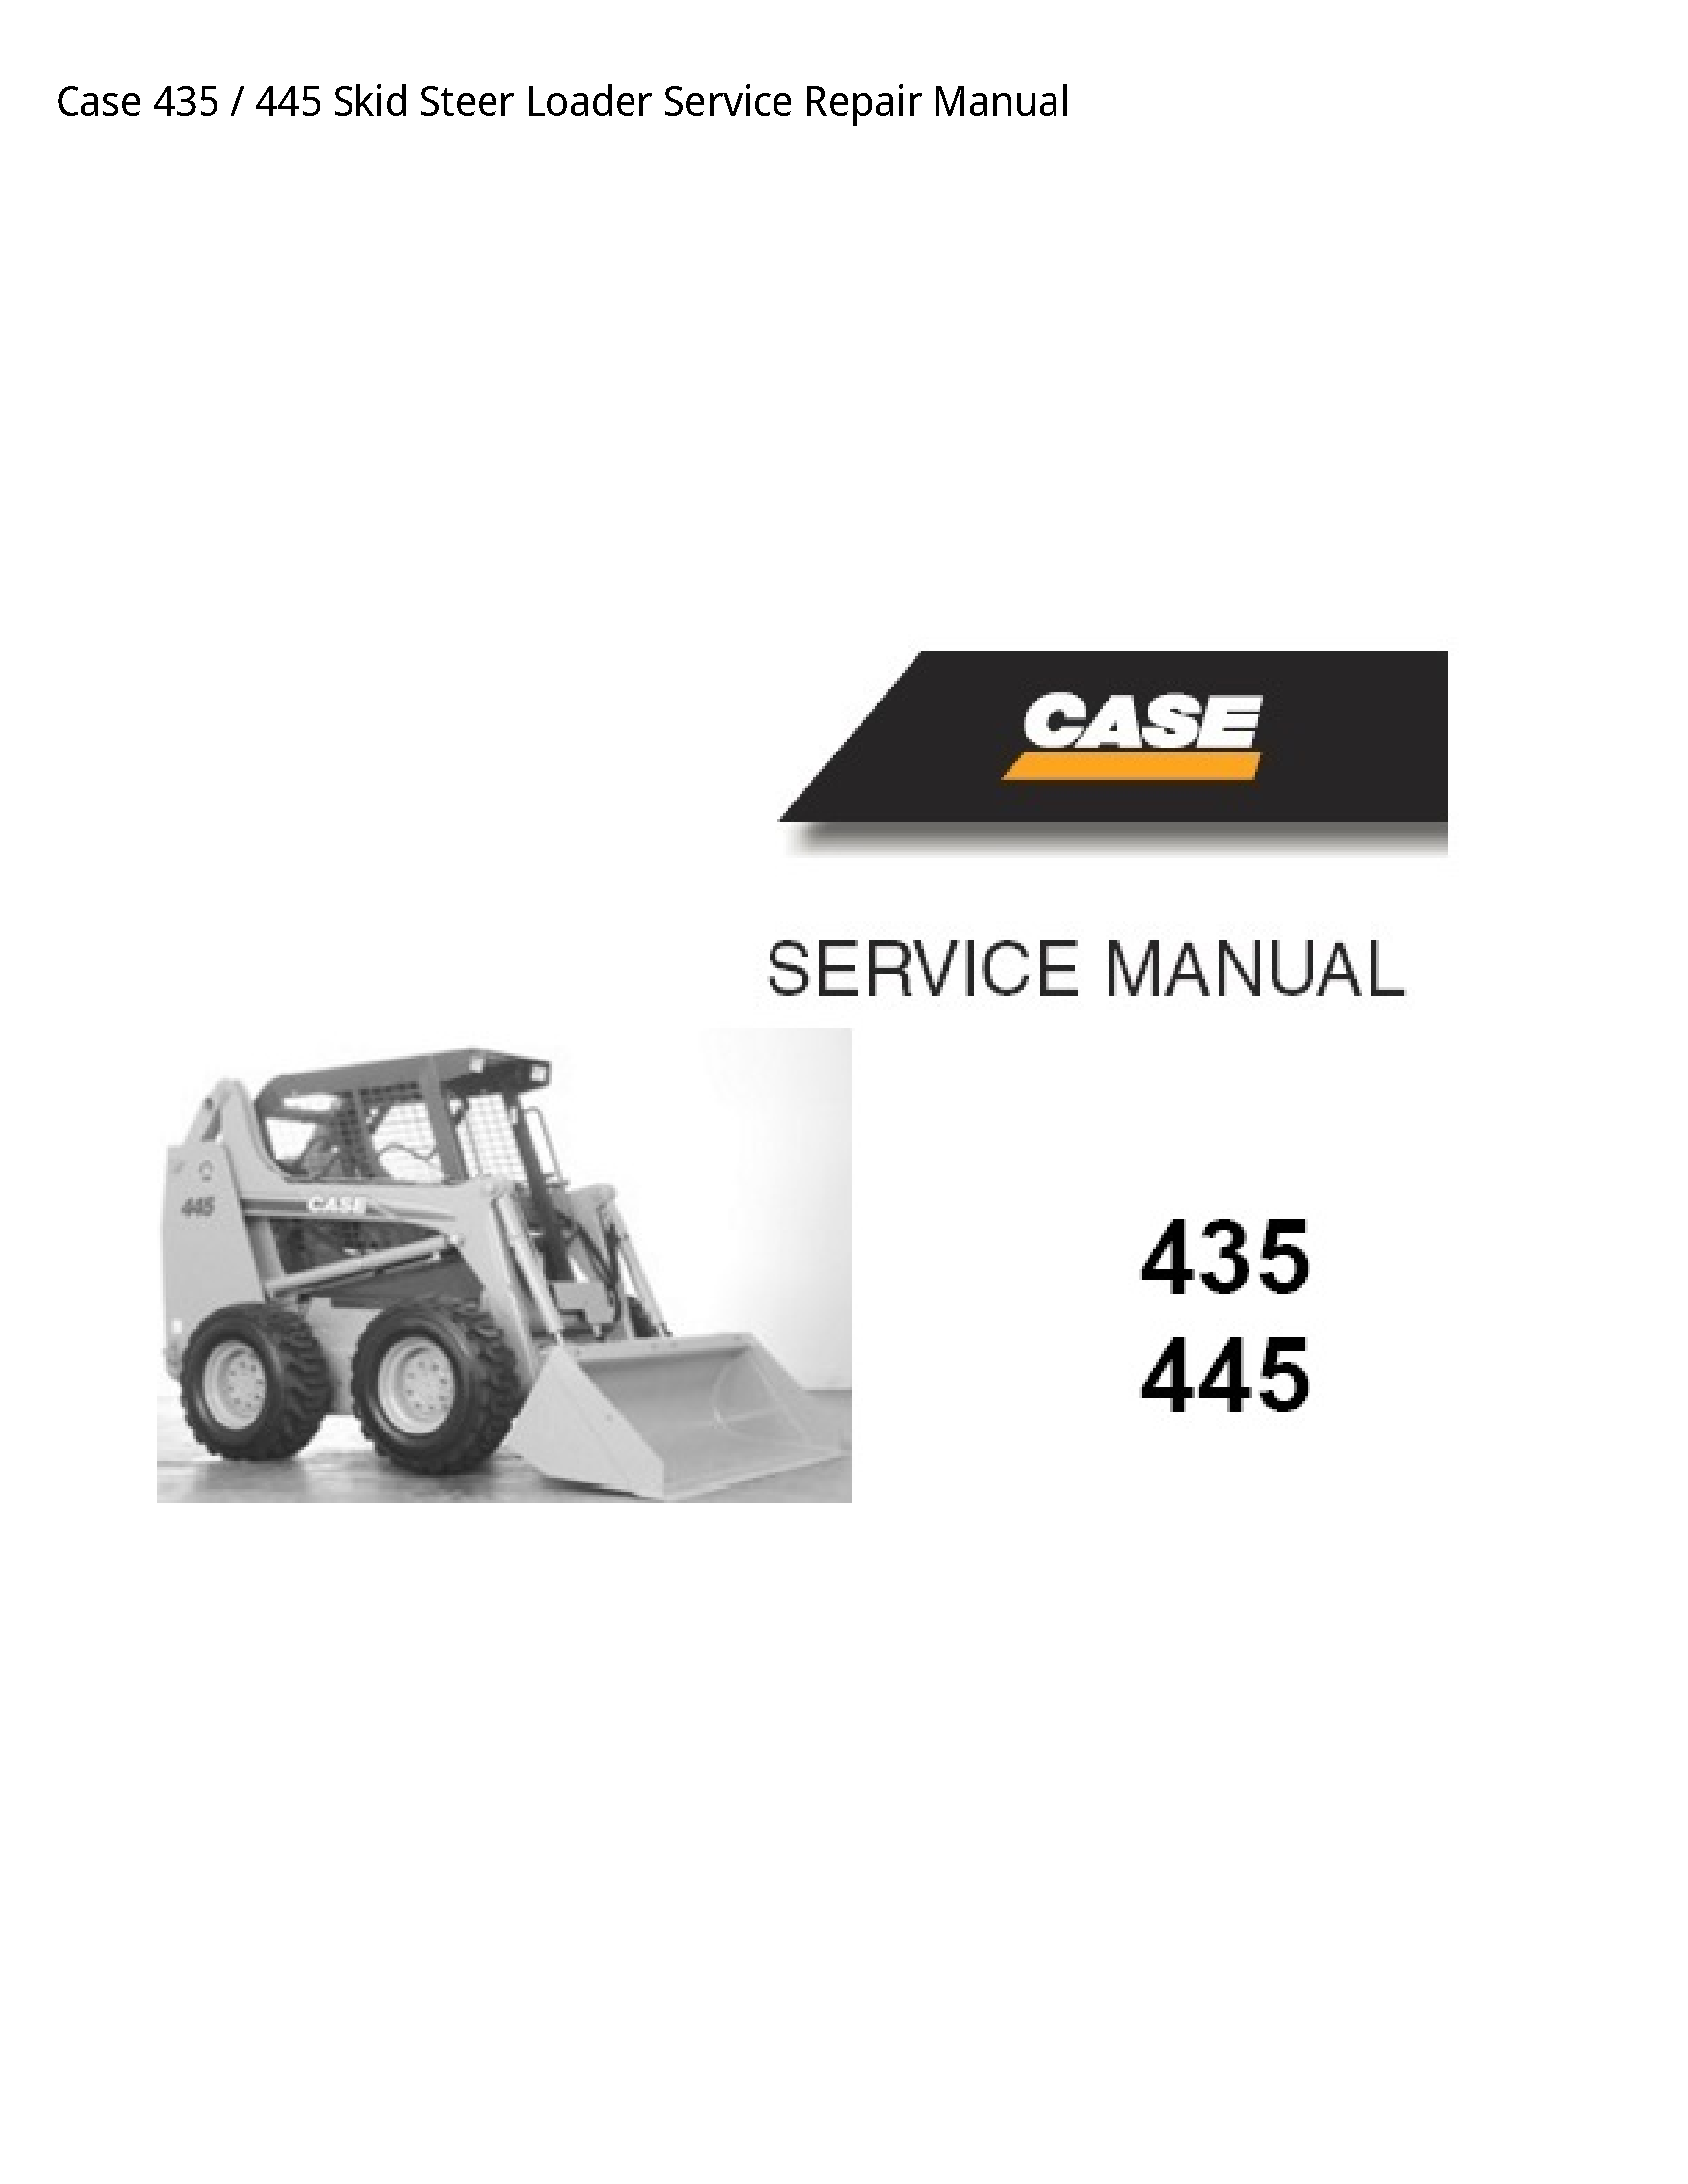 Case/Case IH 435 Skid Steer Loader manual